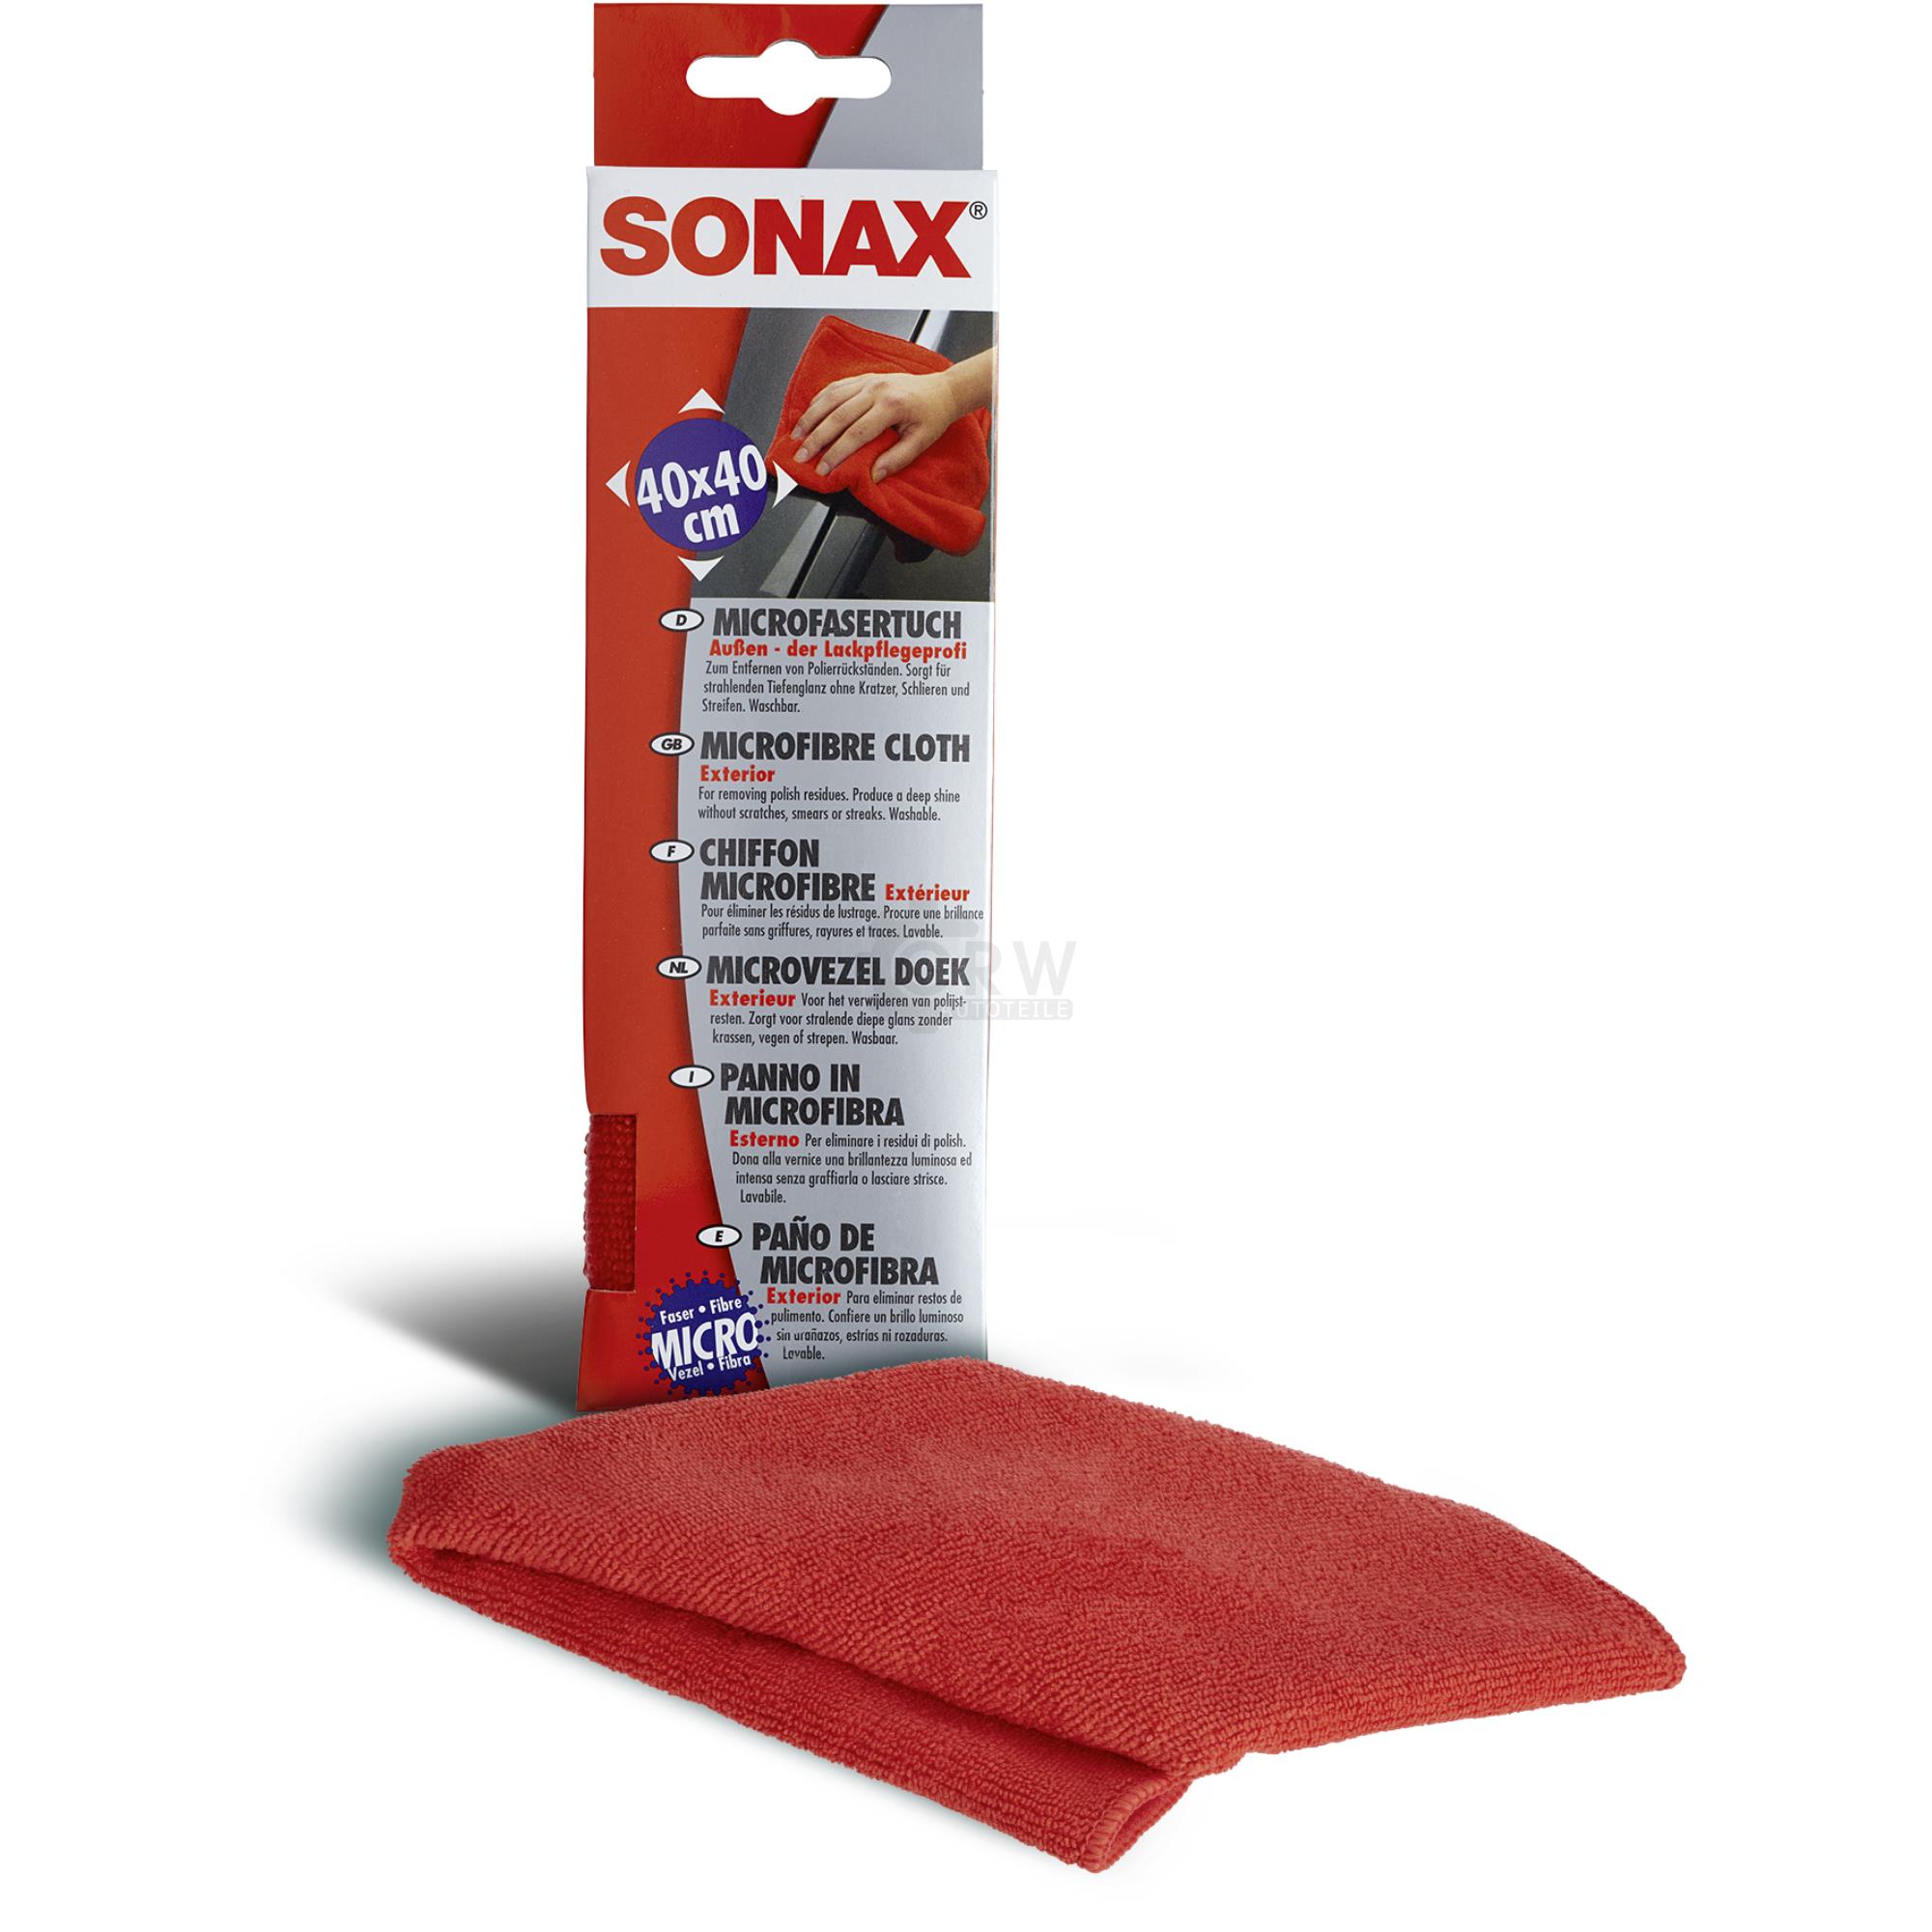 SONAX 04162000  MicrofaserTuch Außen - der Lackpflegeprofi 1 Stück